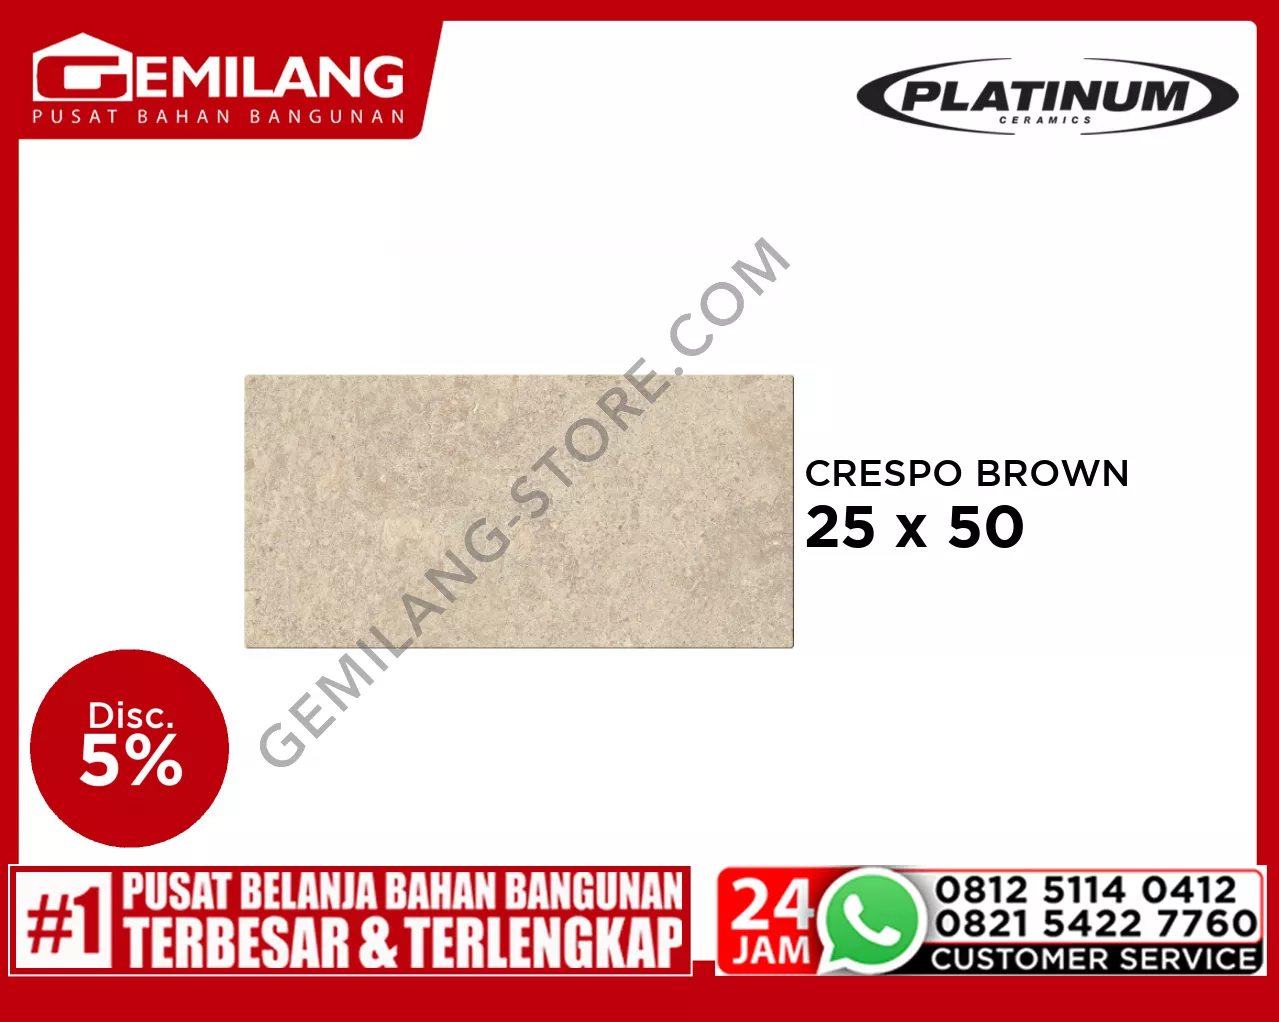 PLATINUM CRESPO BROWN 25 x 50